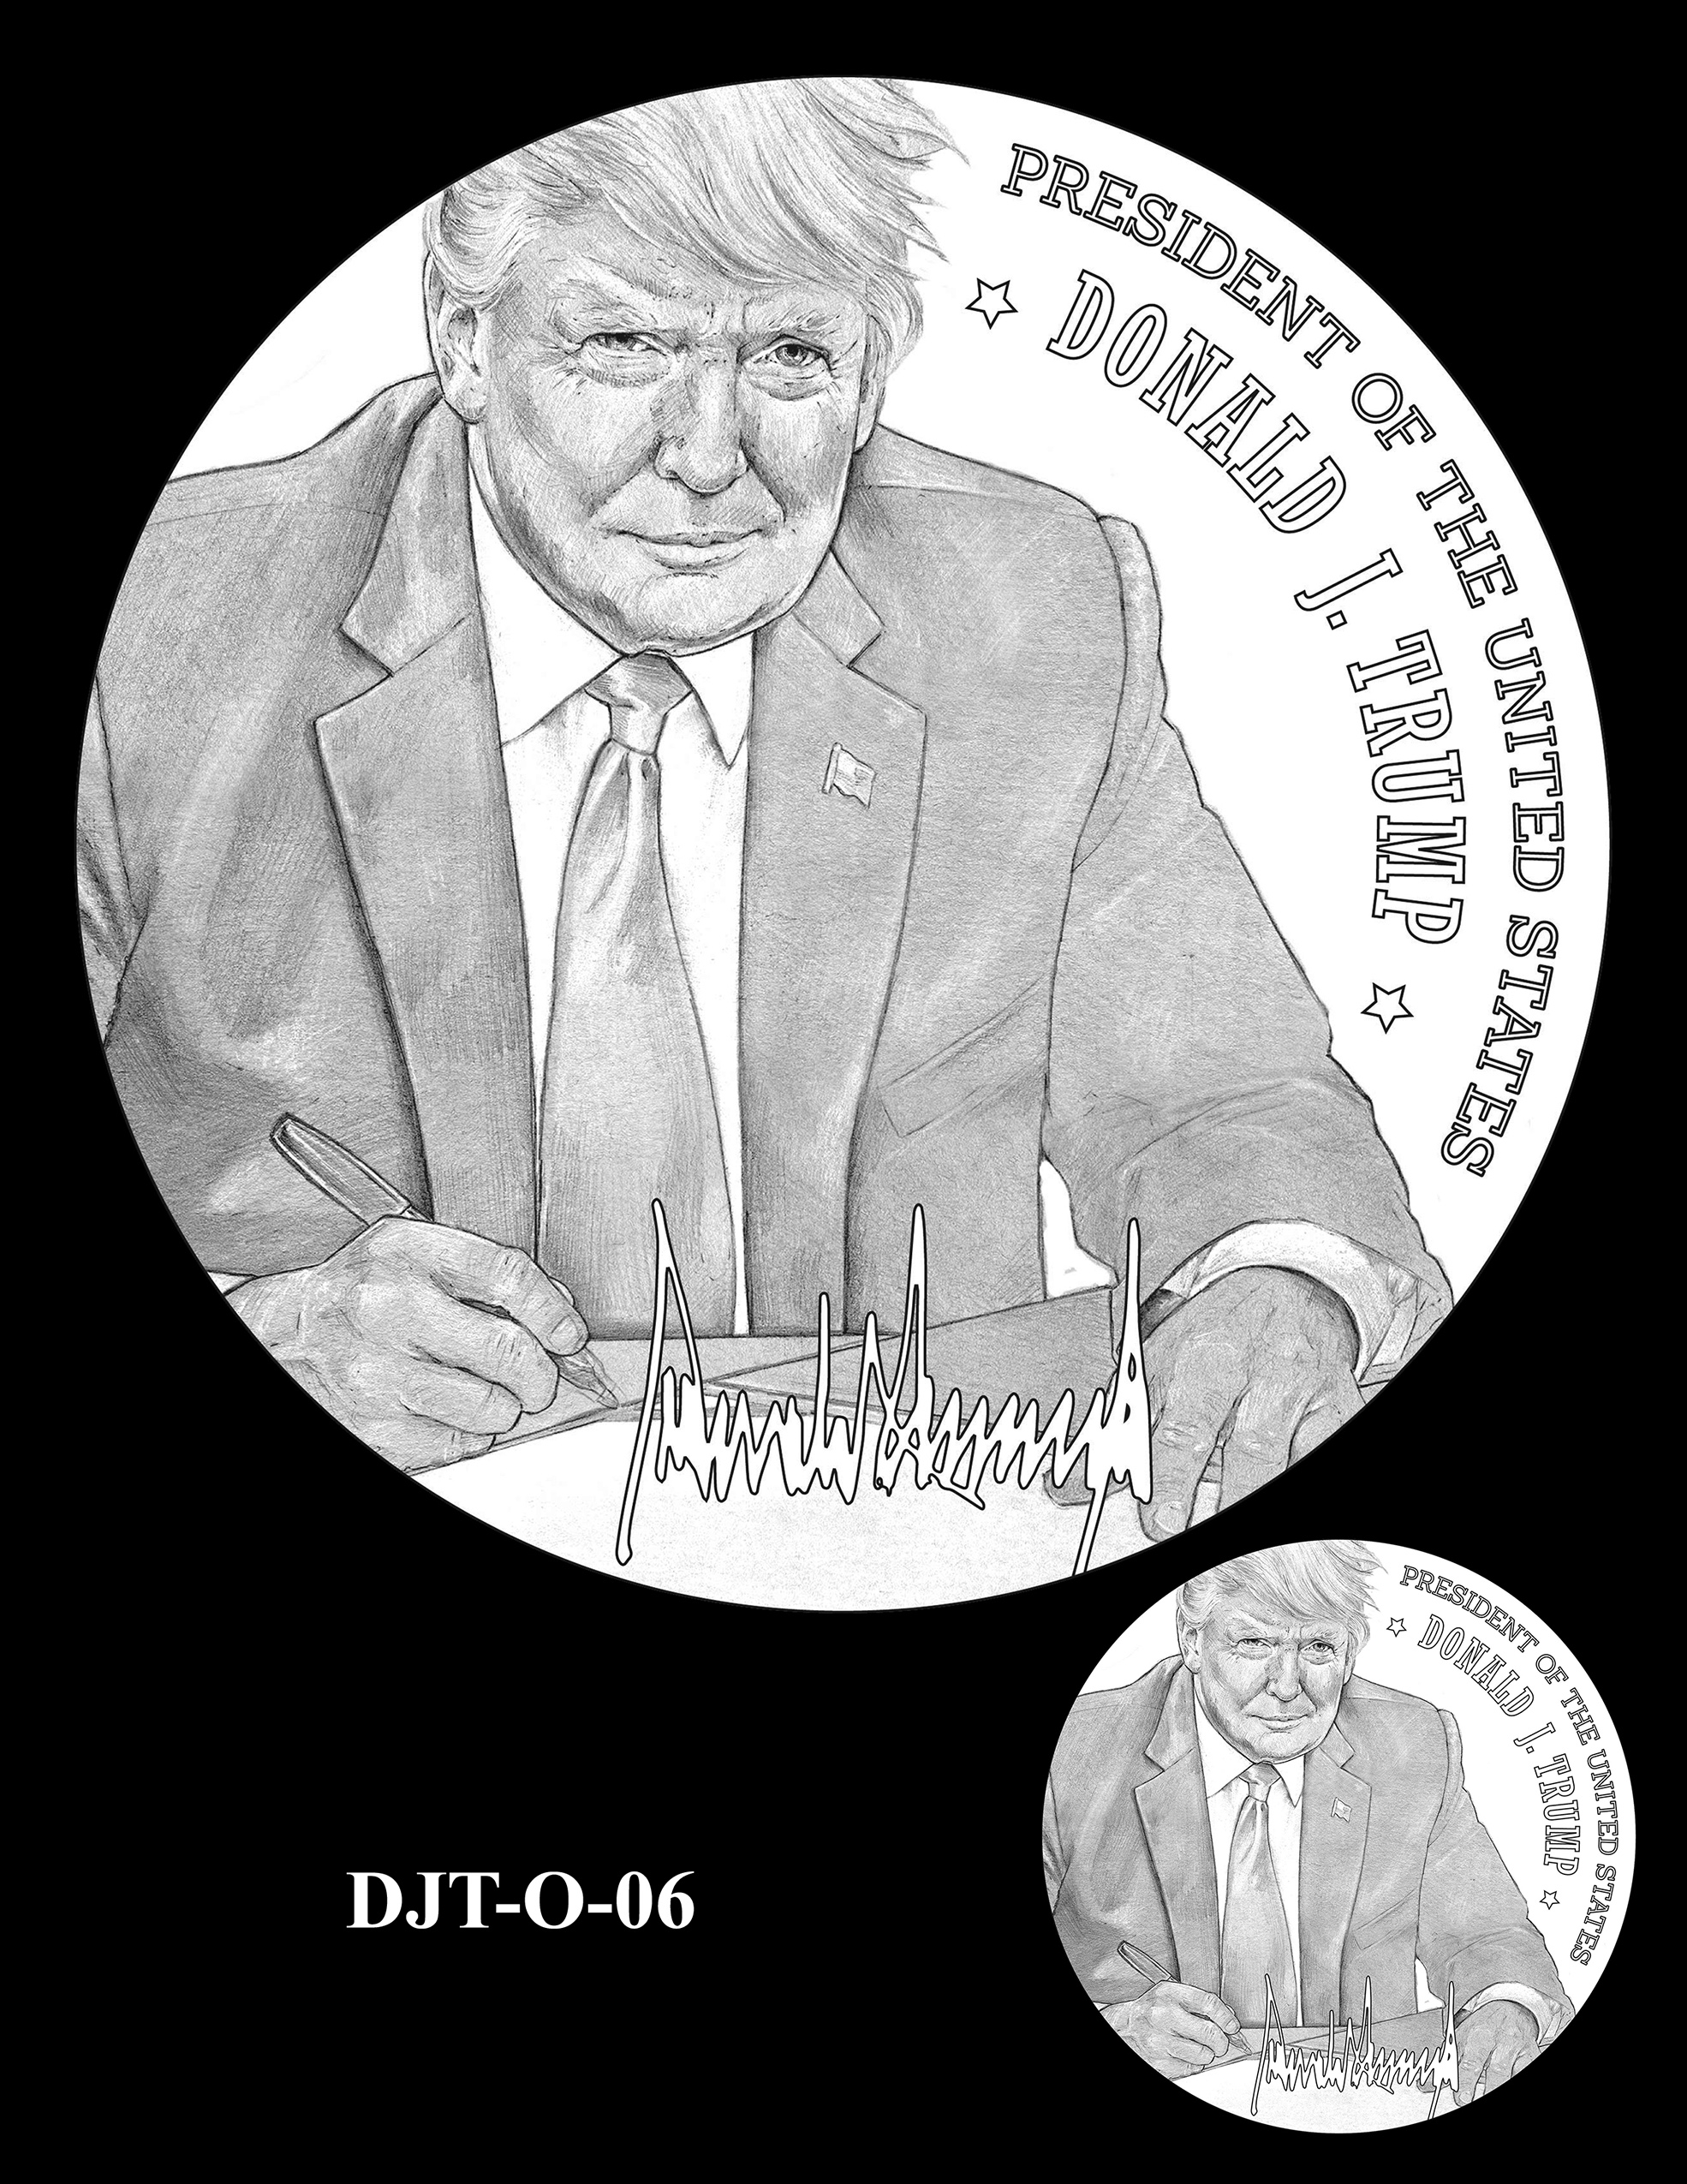 DJT-O-06 -- Donald J. Trump Presidential Medal